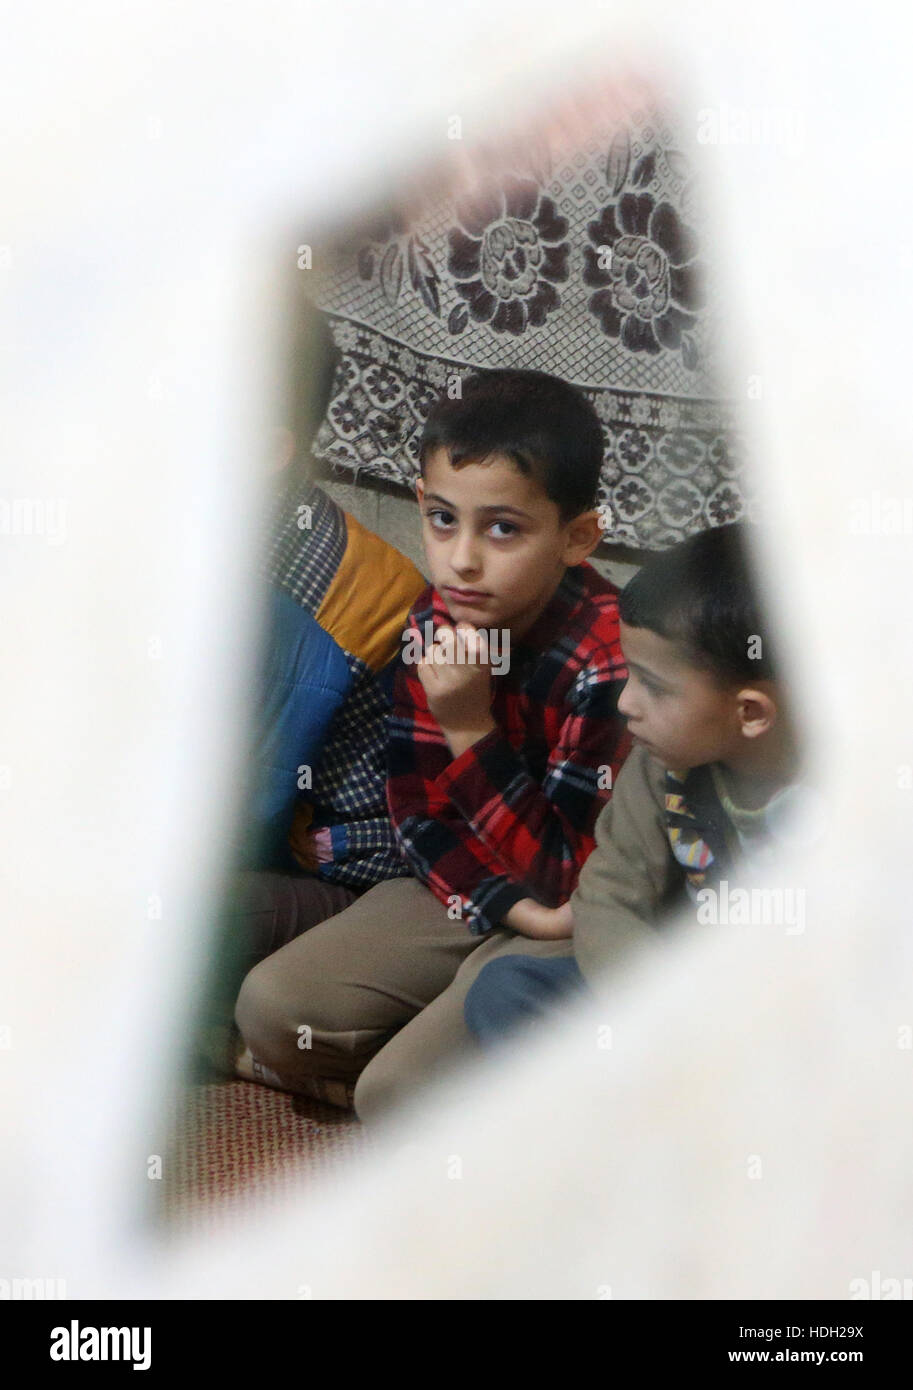 Réfugié syrien Omar Al Rahal, 9, se reflète dans un miroir brisé comme il est assis aux côtés de ses frères dans un appartement à Tripoli, au Liban, après la famille a fui leur maison à Homs, en Syrie. Banque D'Images